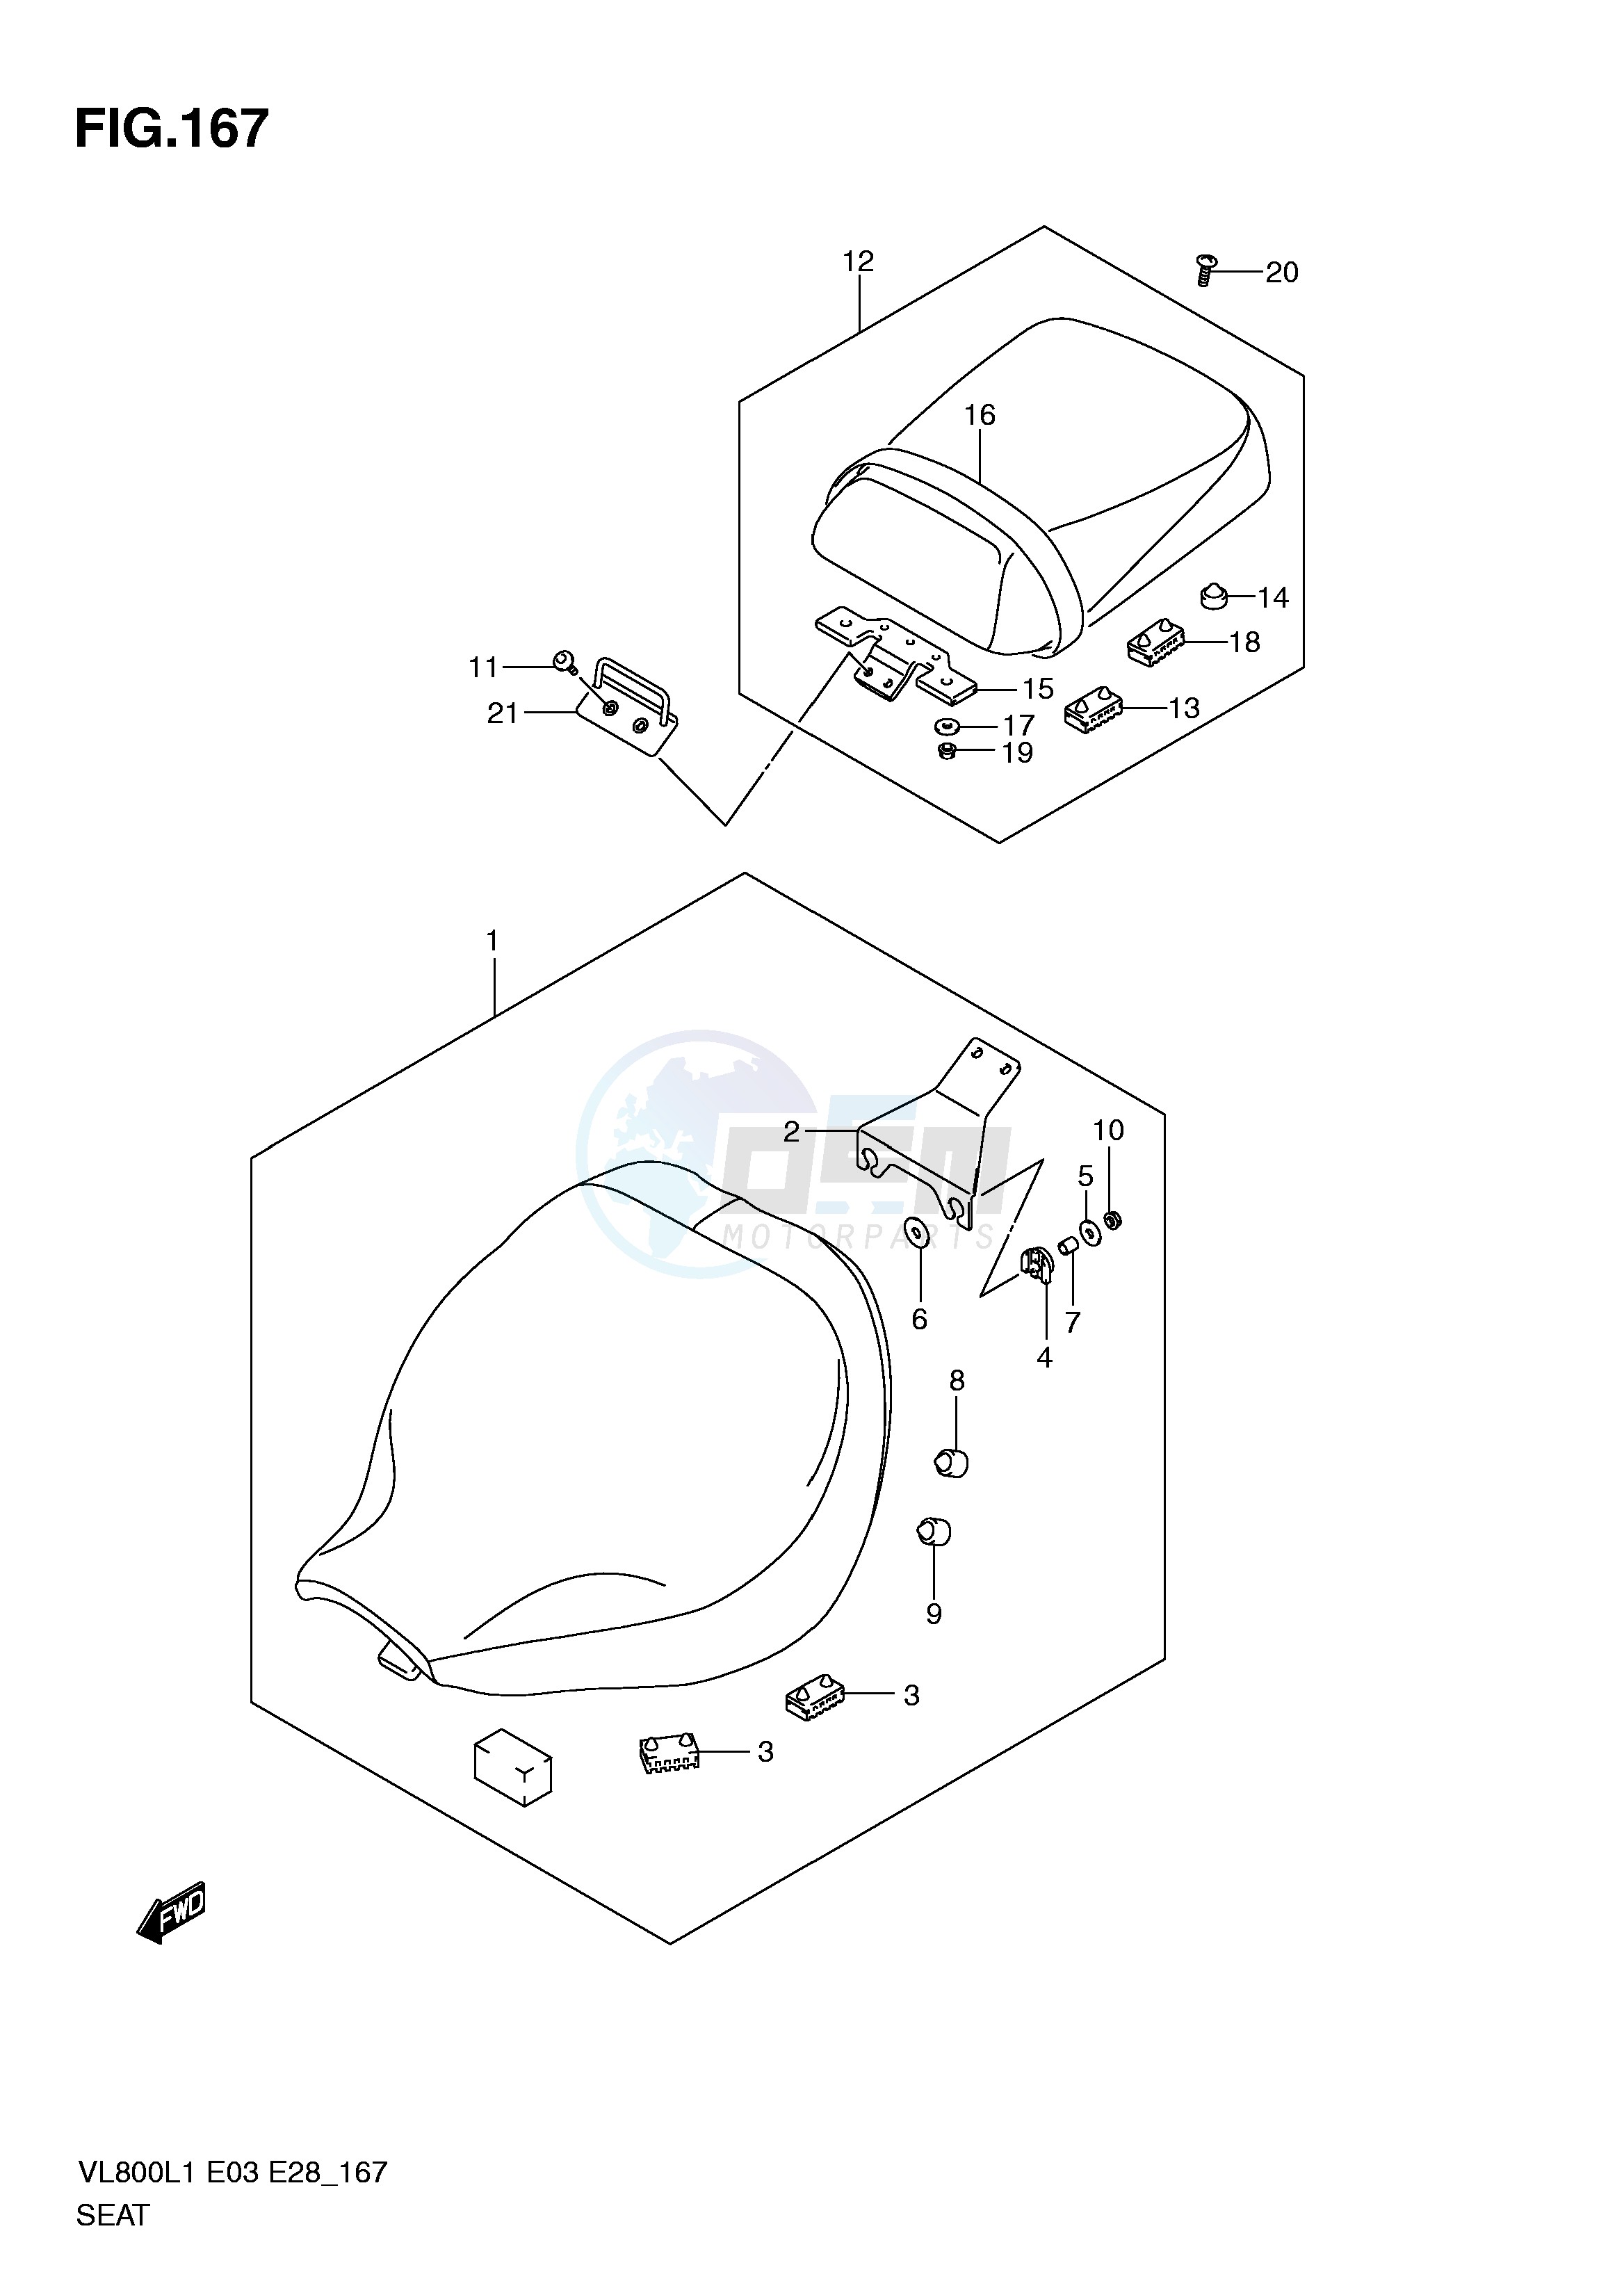 SEAT (VL800CL1 E3) blueprint